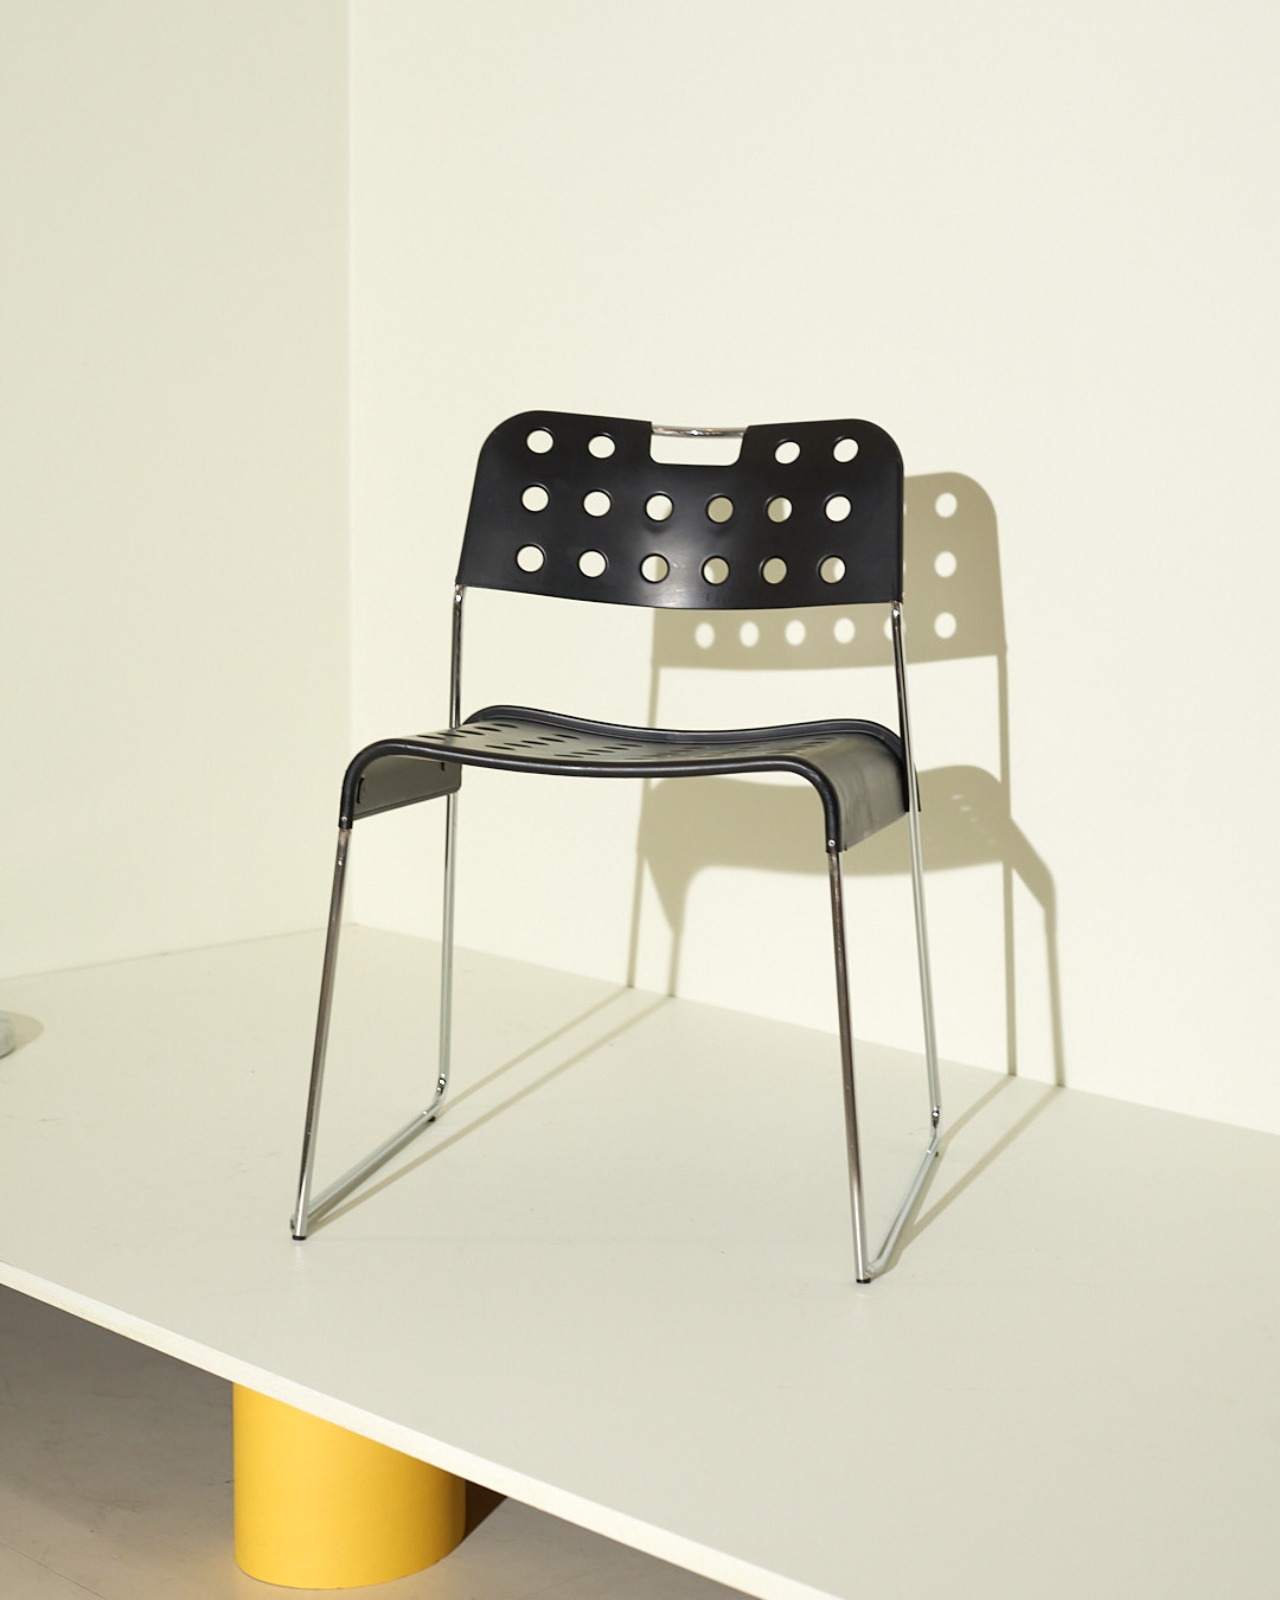 #9760 / Modern Metal Chairs Omstak by Rodney Kinsman for Bieffeplast 70s (black)